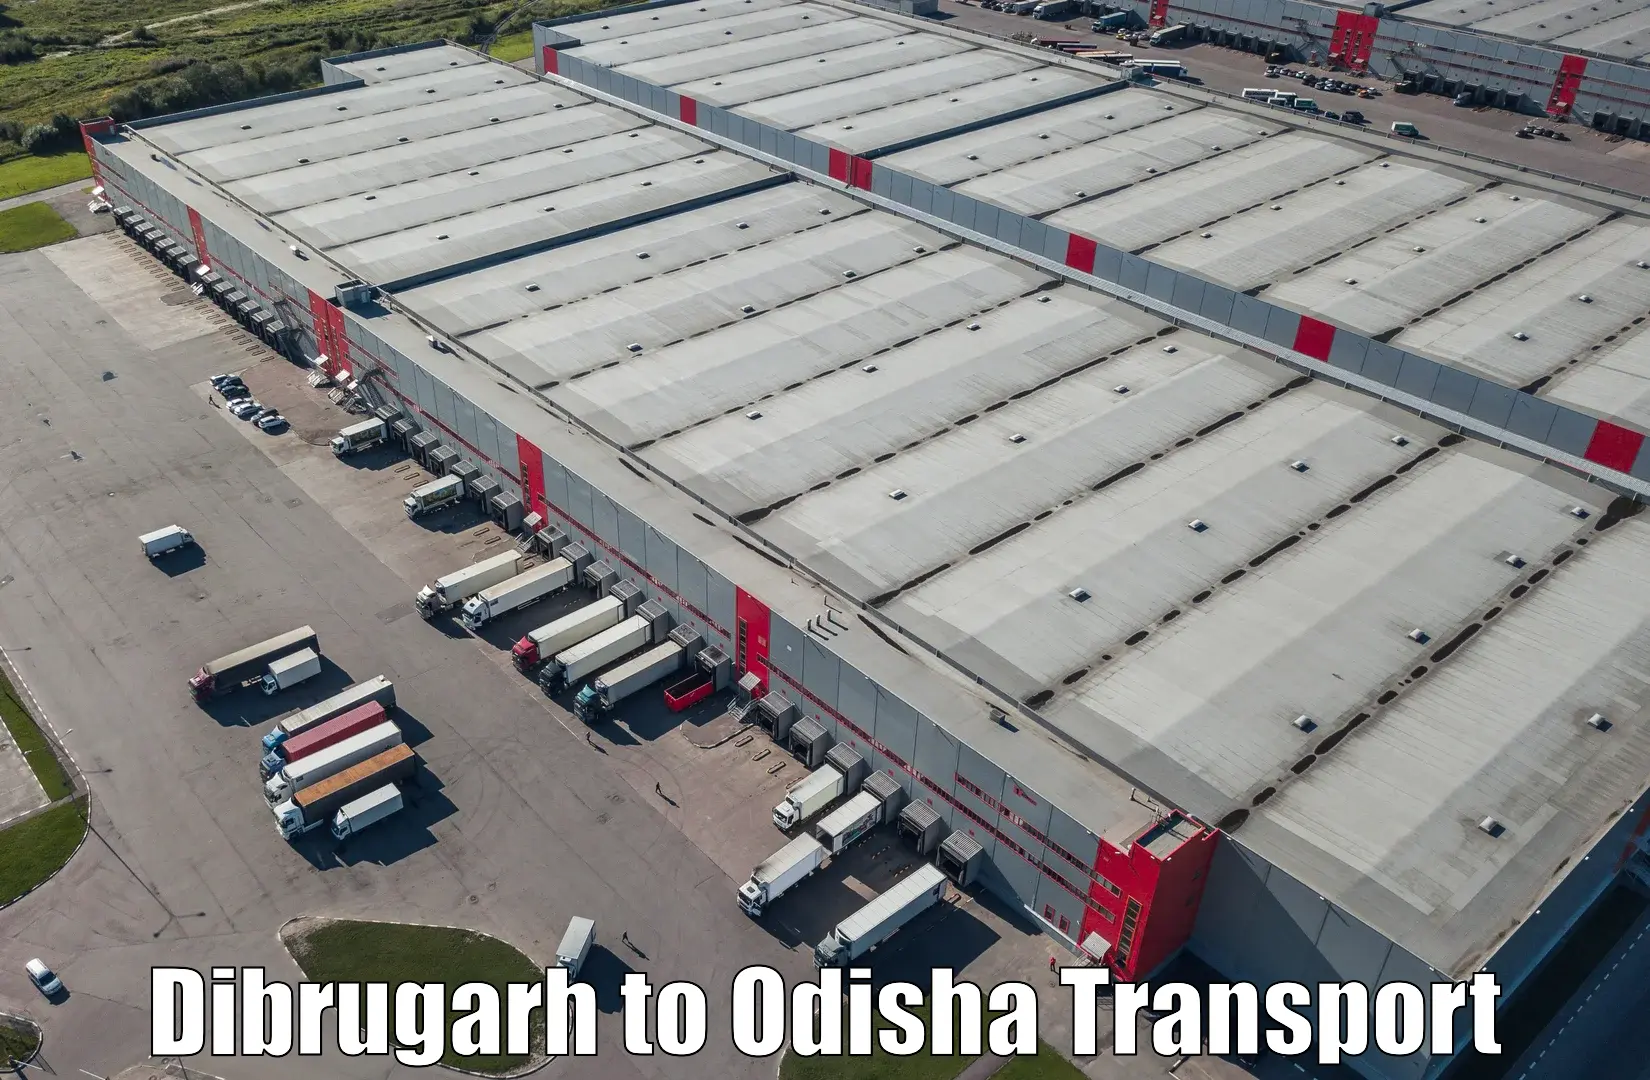 Door to door transport services in Dibrugarh to Dhamanagar